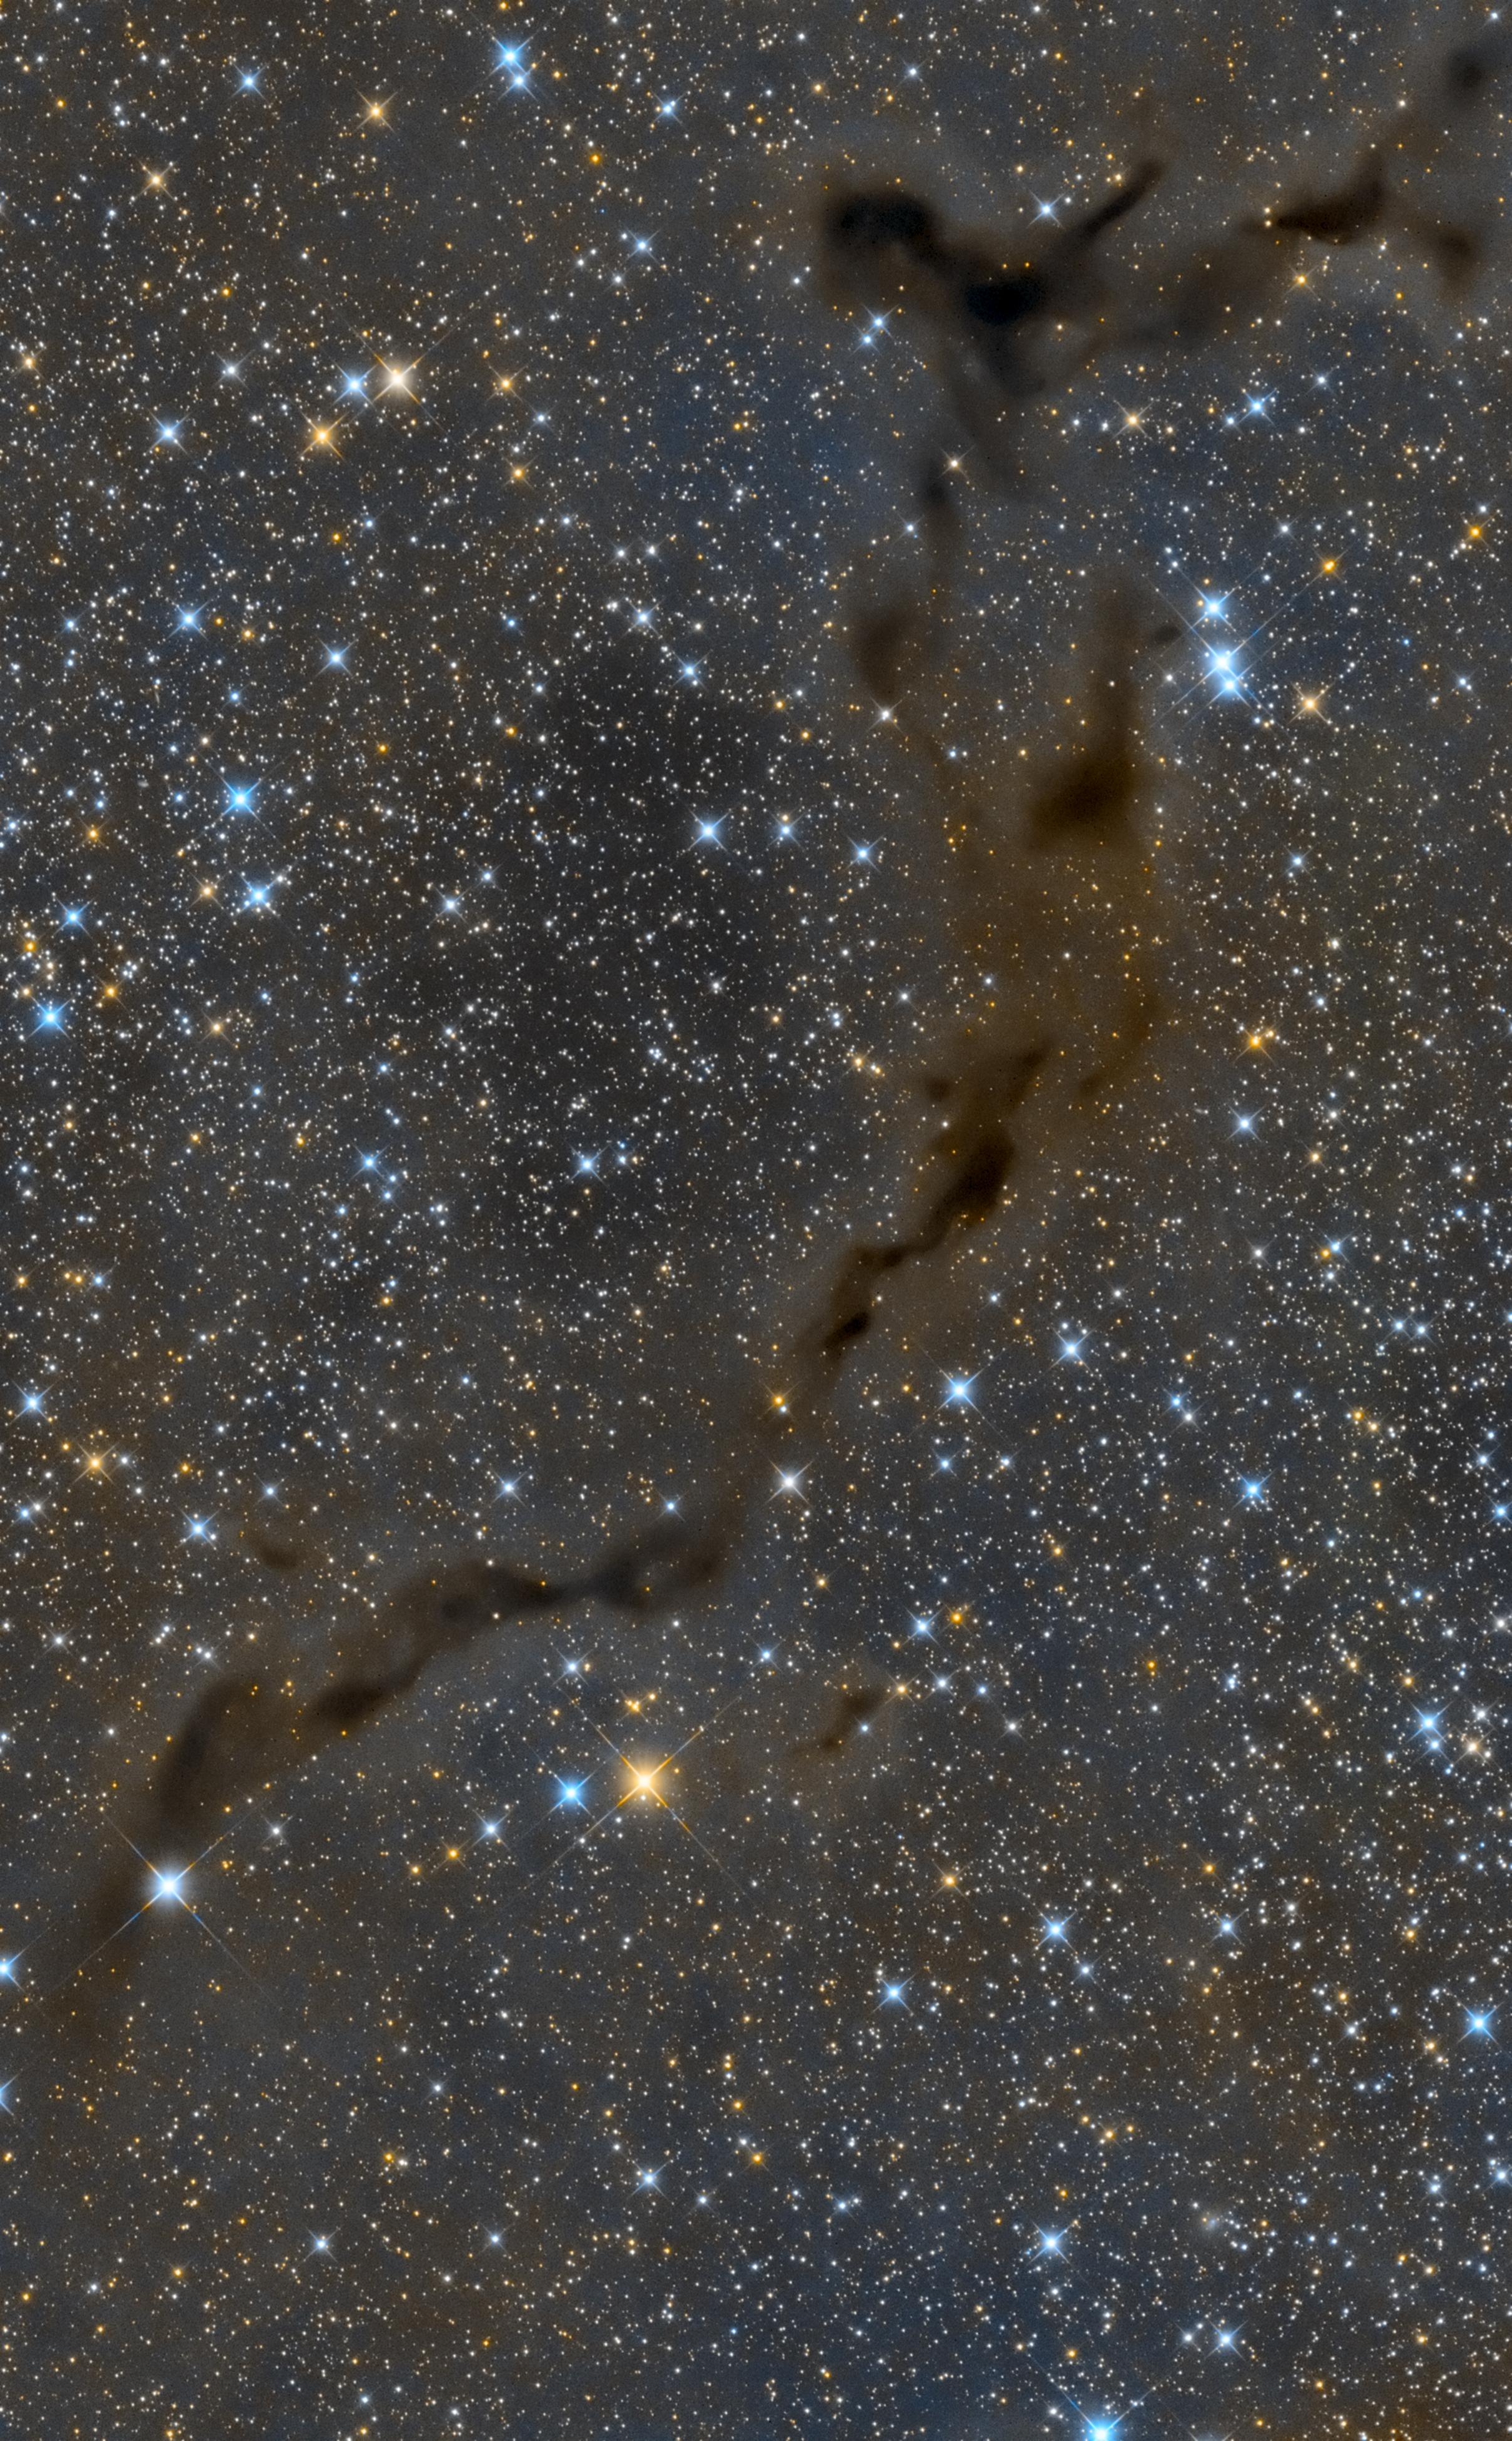 صورة للفضاء العميق مزدانة بالنجوم ويتخللها سحب جزيئية غبارية داكنة تقطع الصورة من أعلى اليمين لأسفل اليسار.